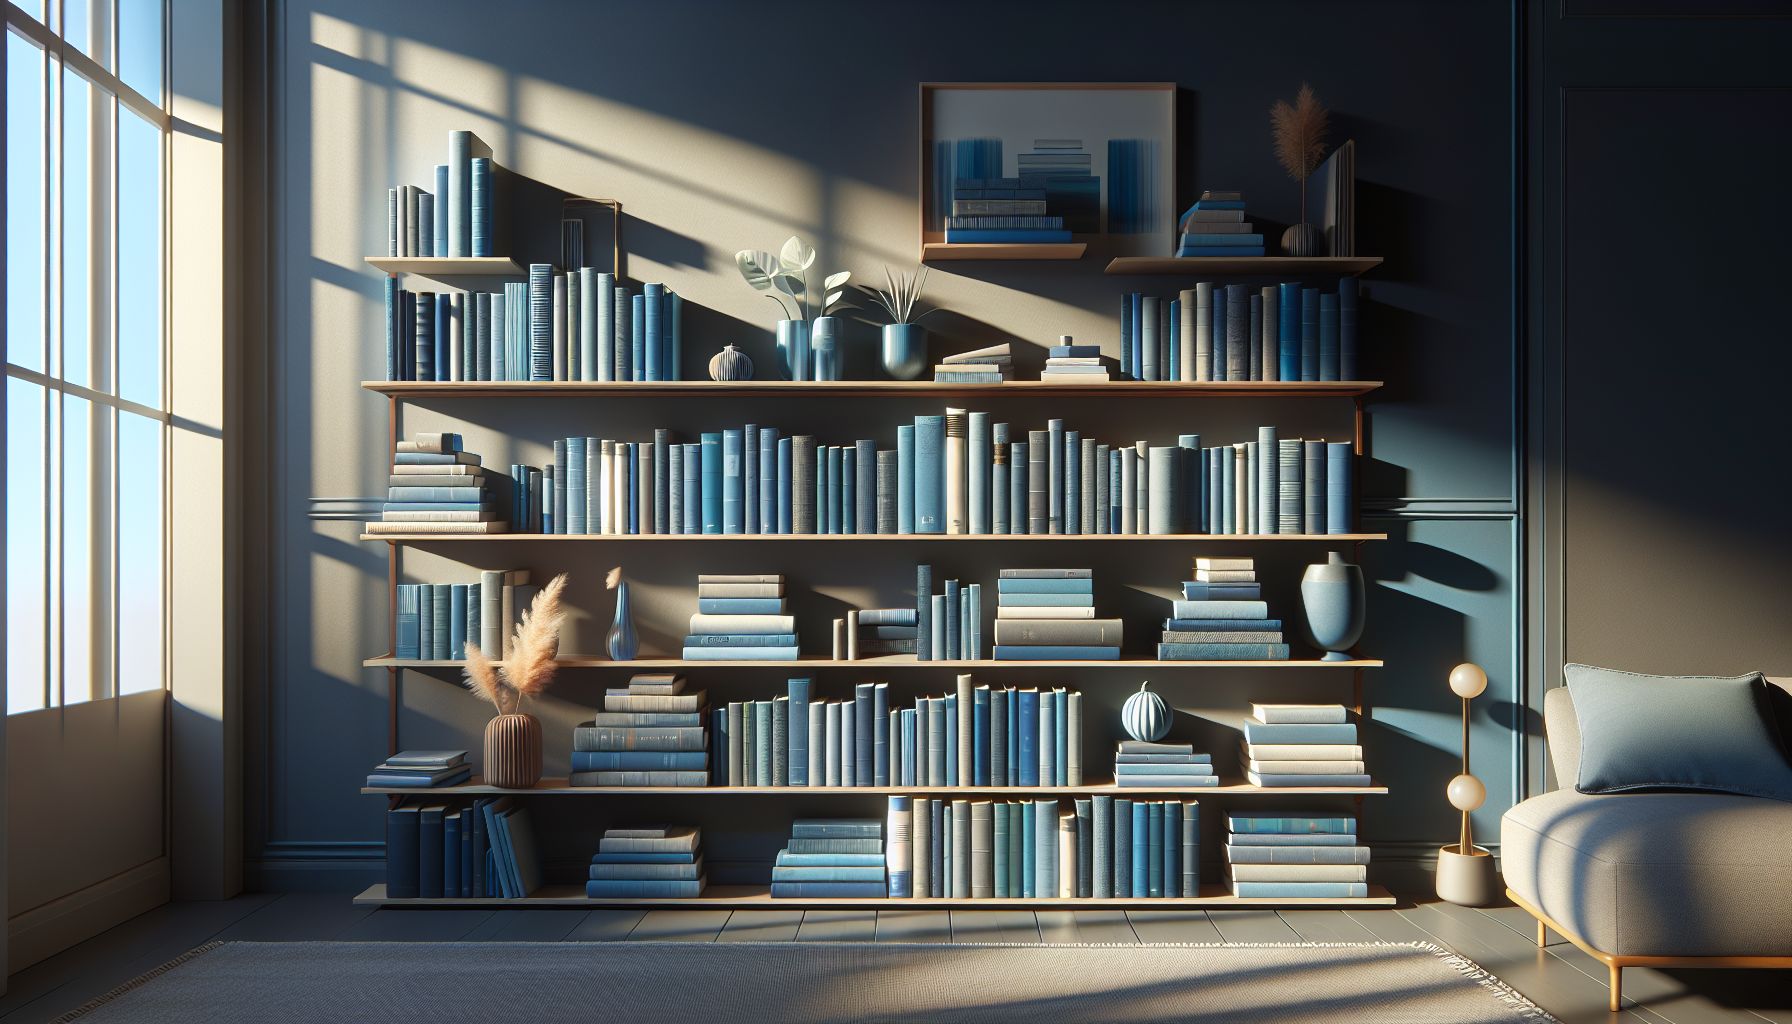 Wohnzimmer in Blau: Ideen und Inspiration- Arrangiere blaue Bücher sichtbar im Regal